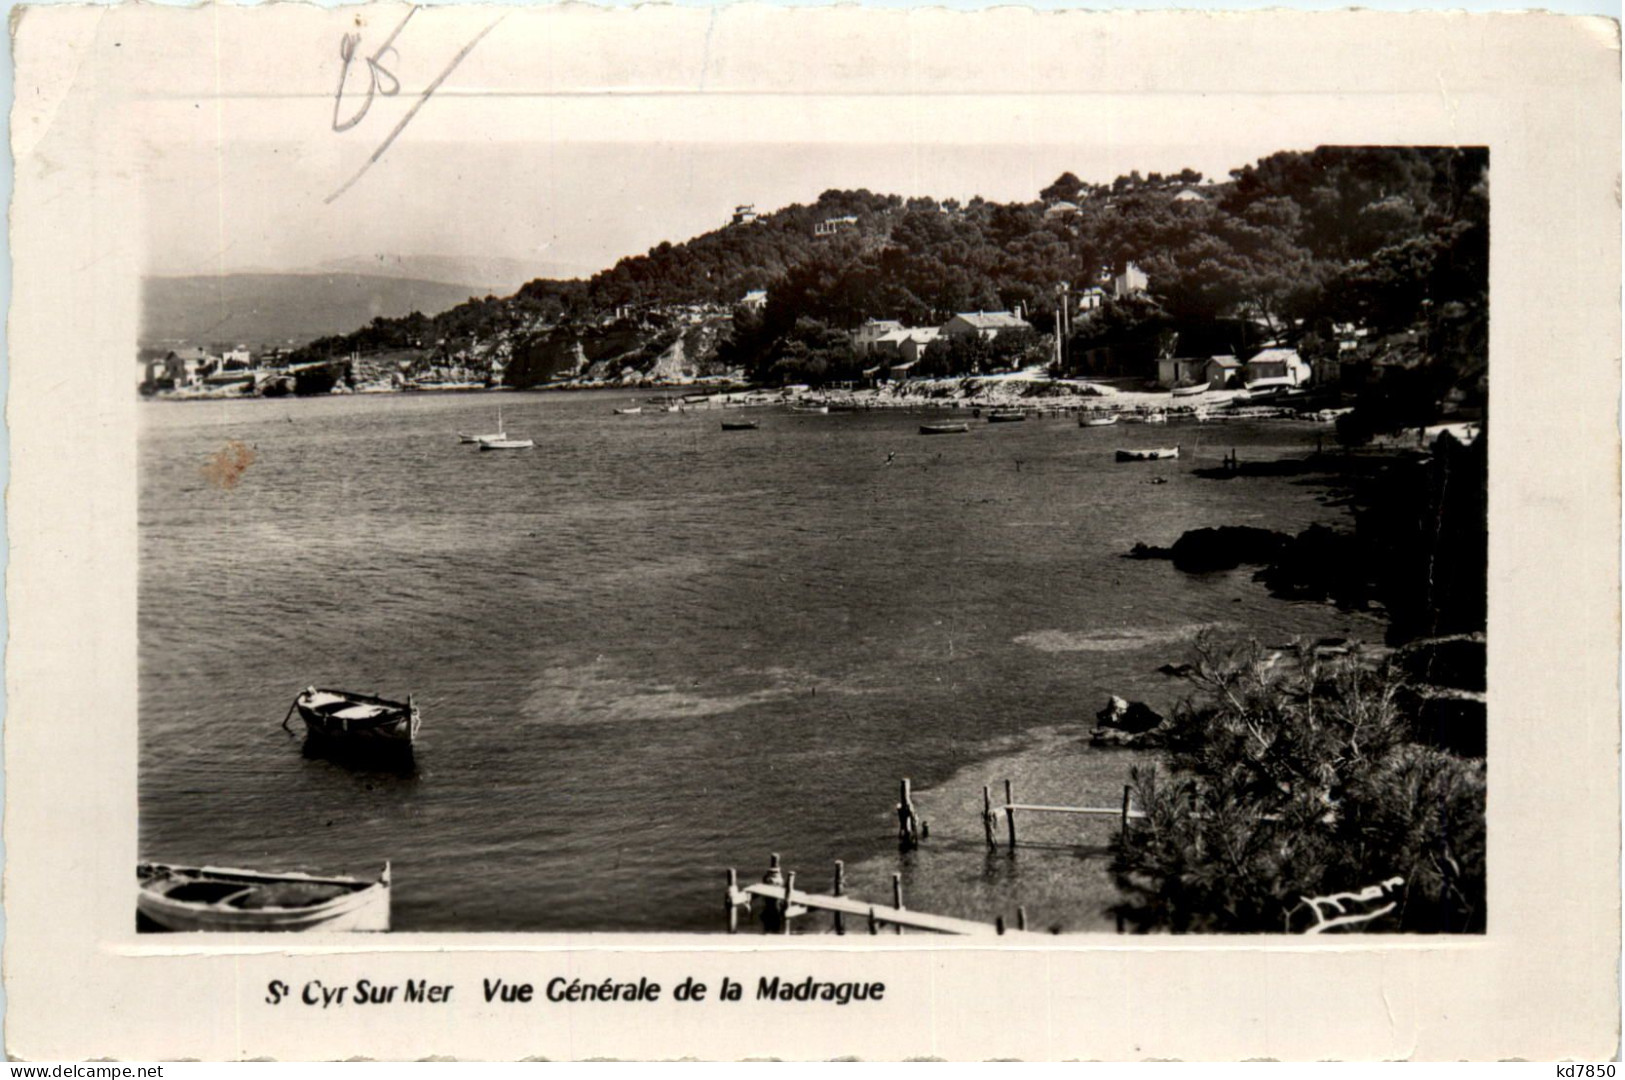 Cyr Sur Mer, Vue Generale De La Madrague - Saint-Cyr-sur-Mer